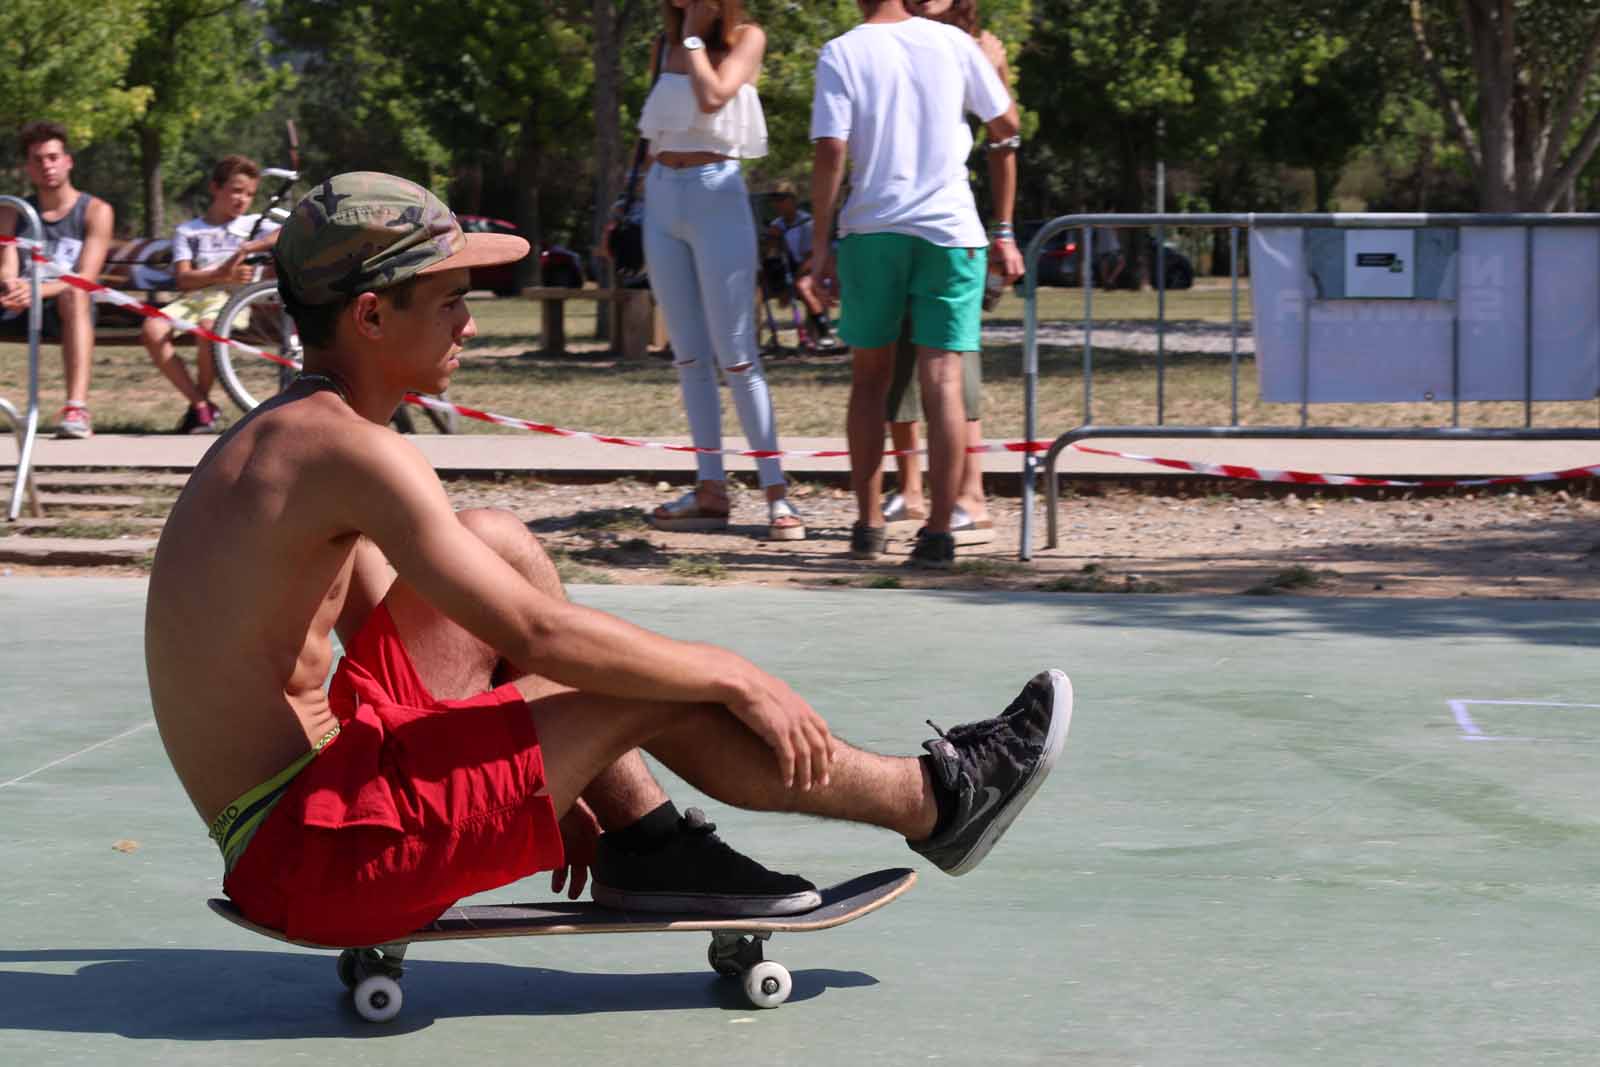 Competició d'skateboard. Foto: Lali Alvarez